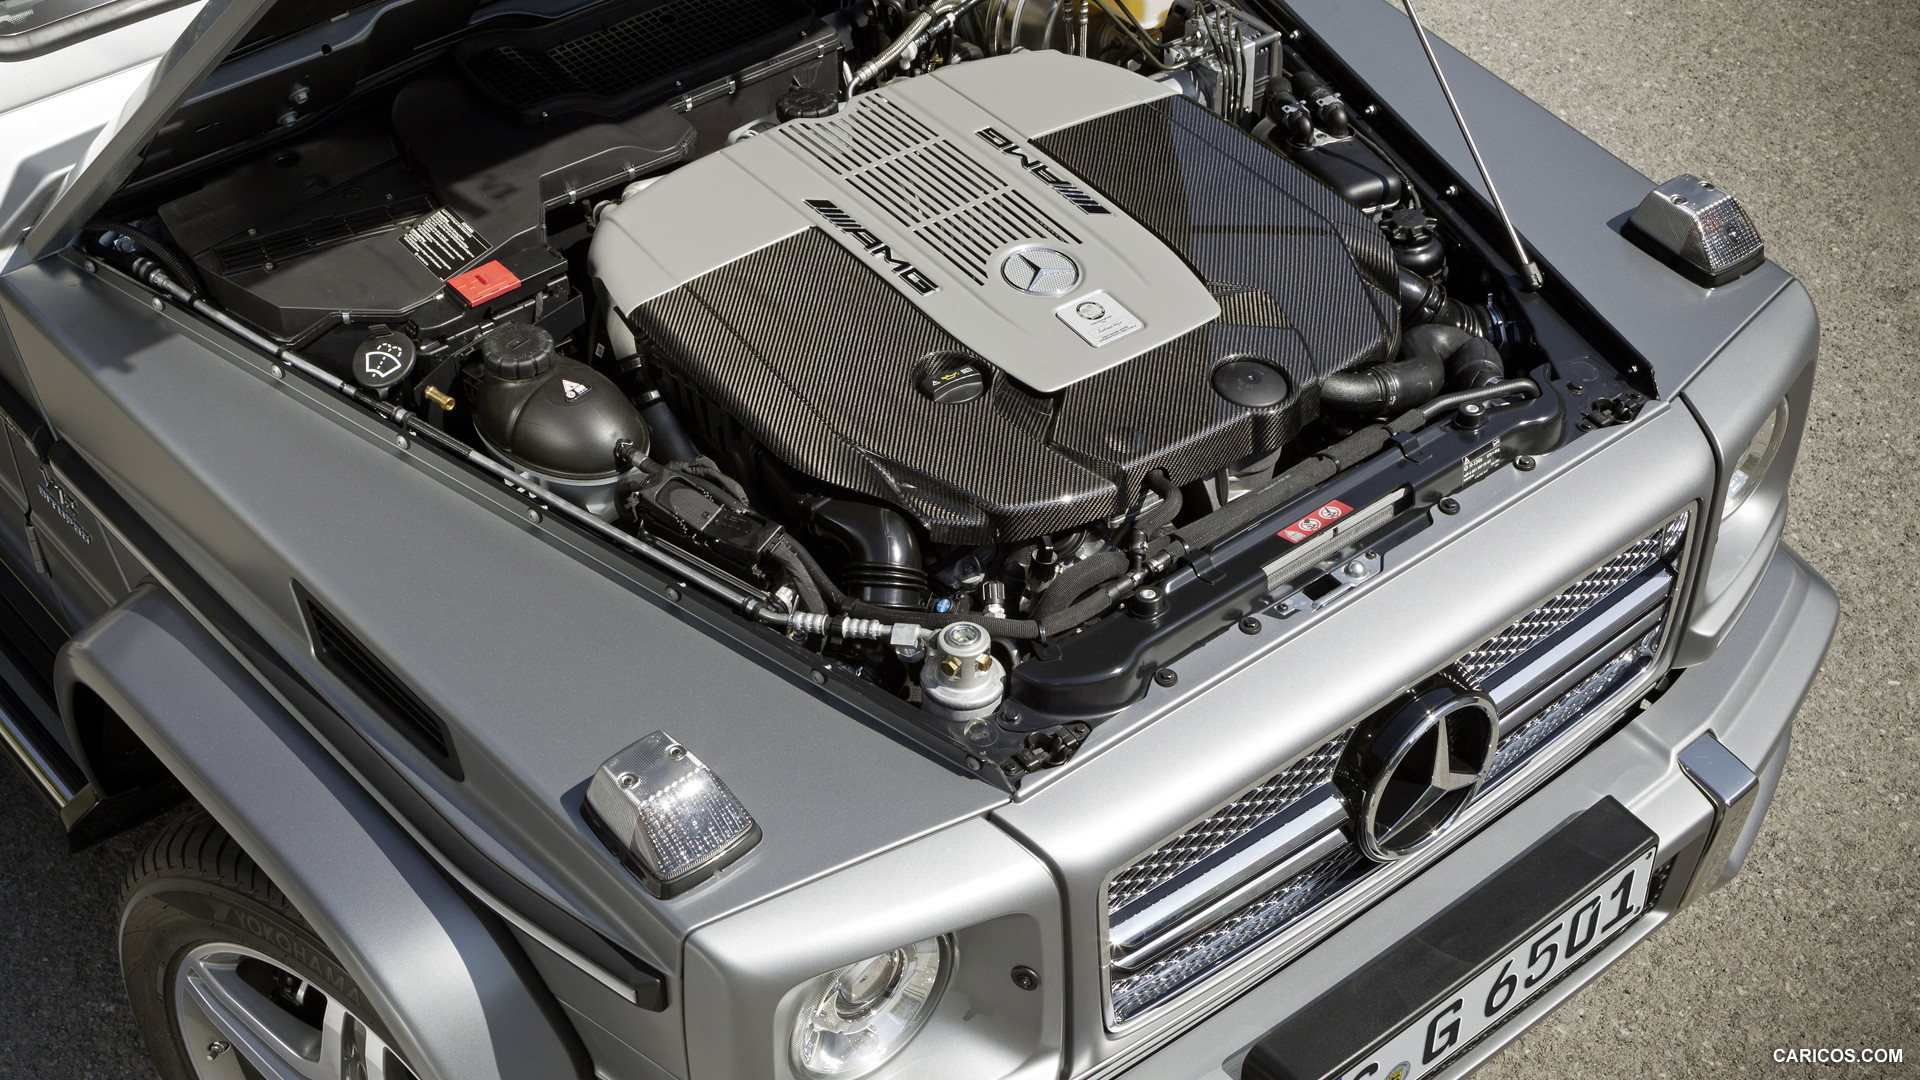 Mercedes-Benz G65 AMG V12 Biturbo (2013)  - Engine, #8 of 28